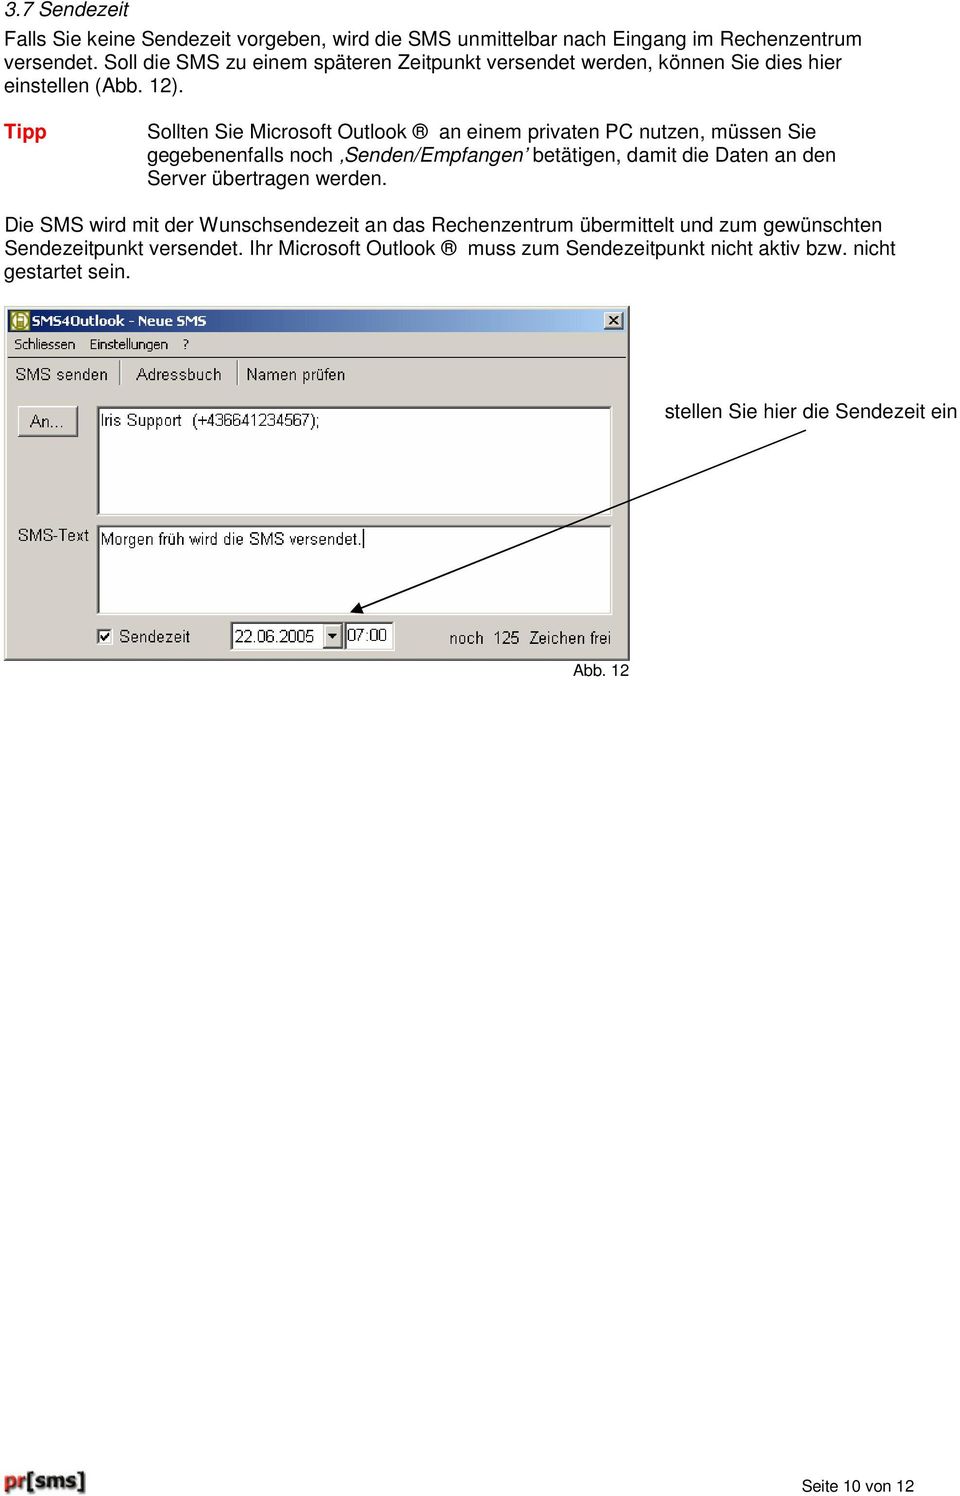 Tipp Sollten Sie Microsoft Outlook an einem privaten PC nutzen, müssen Sie gegebenenfalls noch Senden/Empfangen betätigen, damit die Daten an den Server